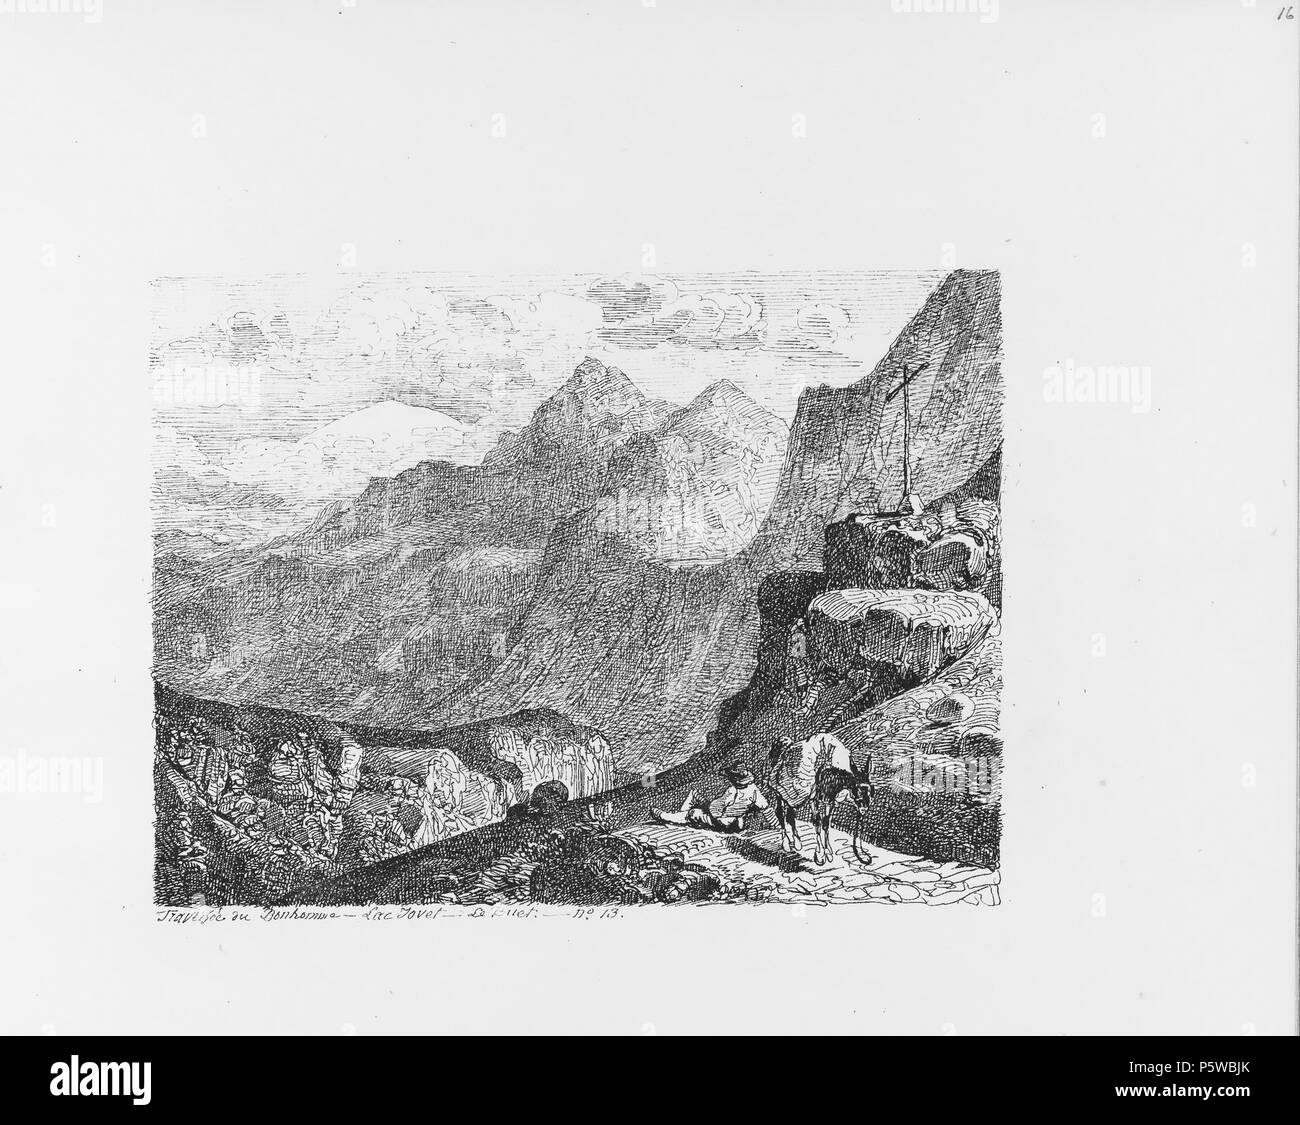 322 CH-NB-Voyage autour du Mont-Blanc dans les vallées d'Hérens de Zermatt et au Grimsel 1843-nbdig-19161-015 Stock Photo